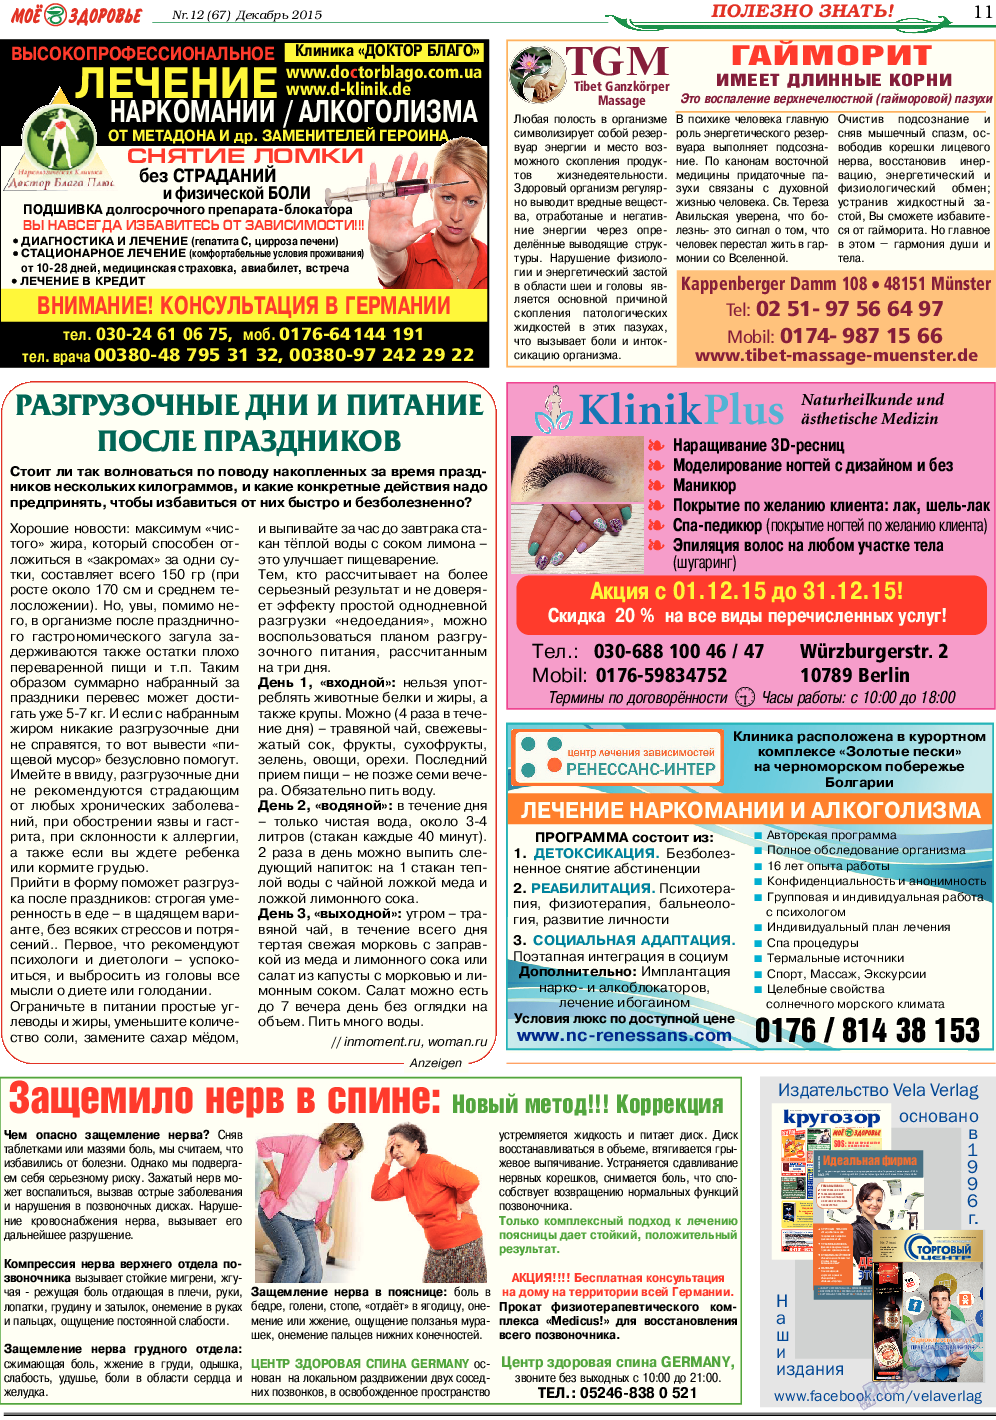 Кругозор, газета. 2015 №12 стр.11